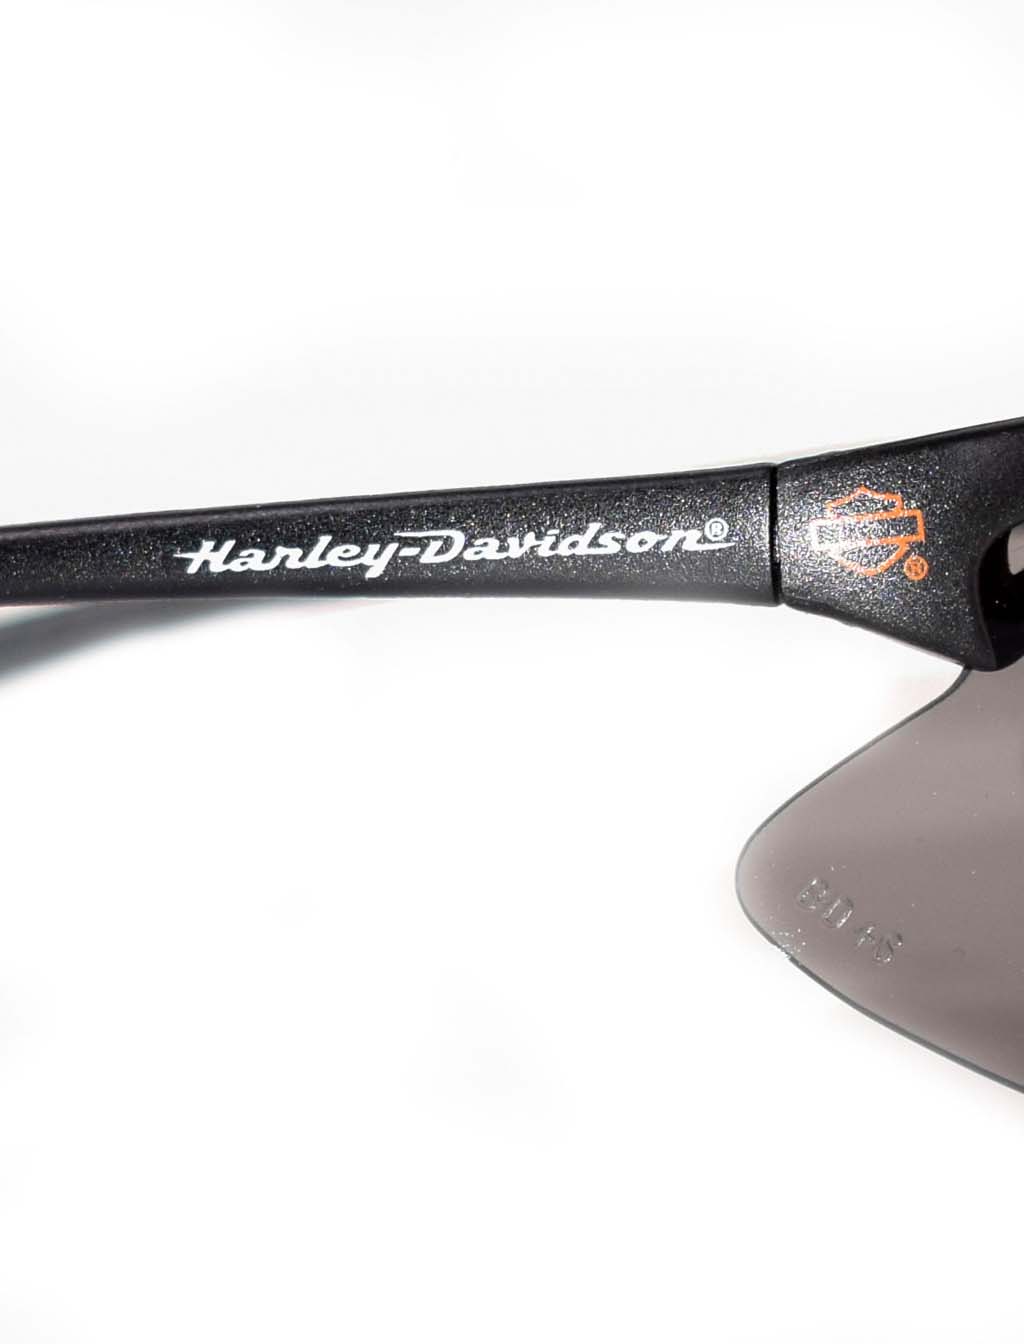 Очки баллистические Harley Davidson комплект 2 очков 